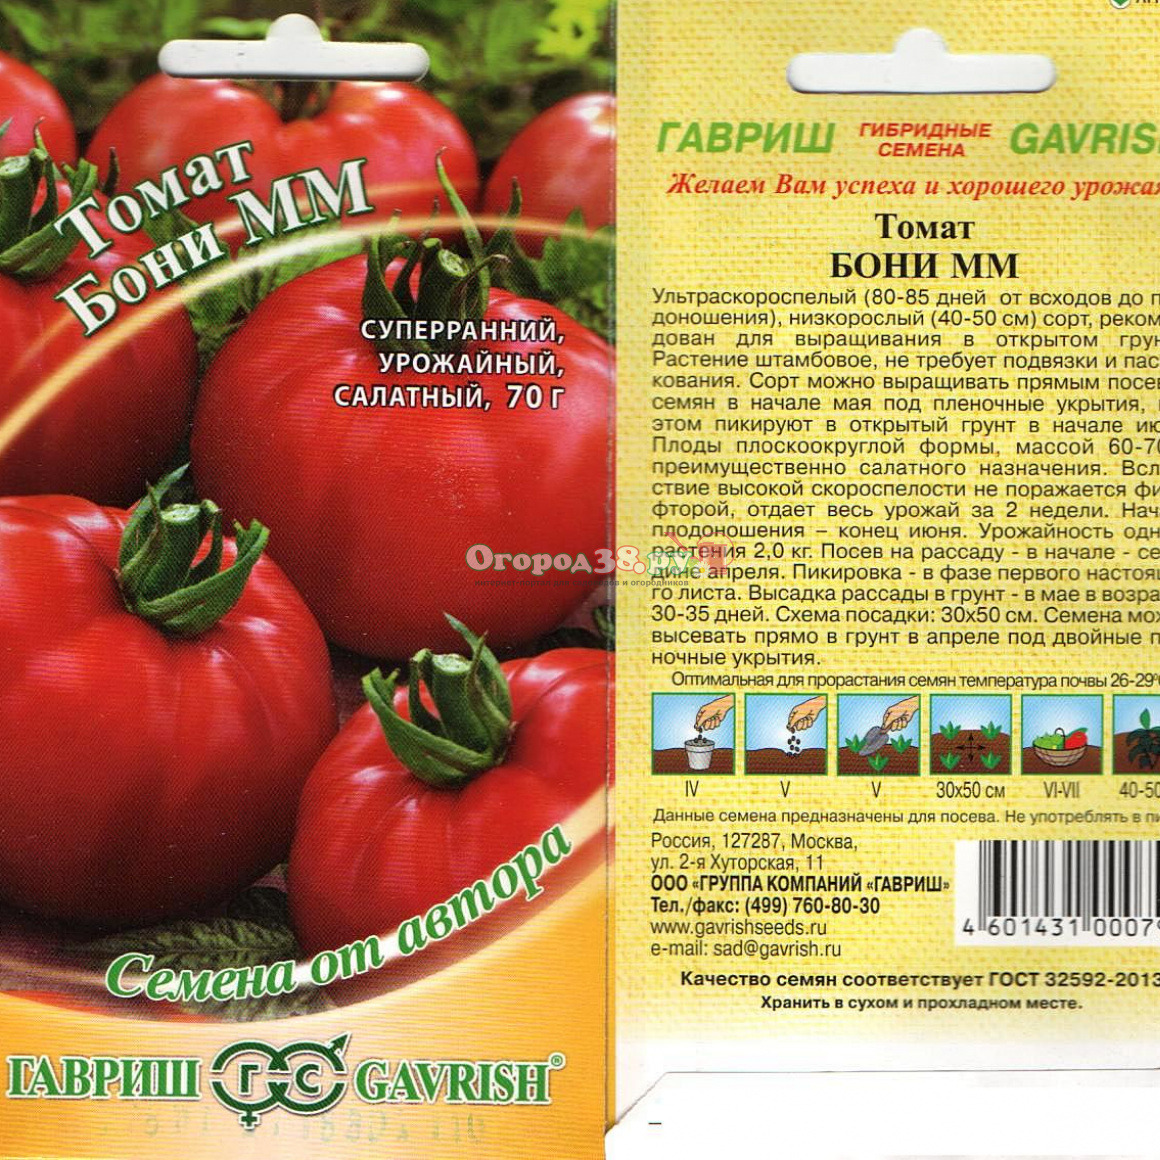 Лучшие сорта томатов - фото, названия и описания (каталог)